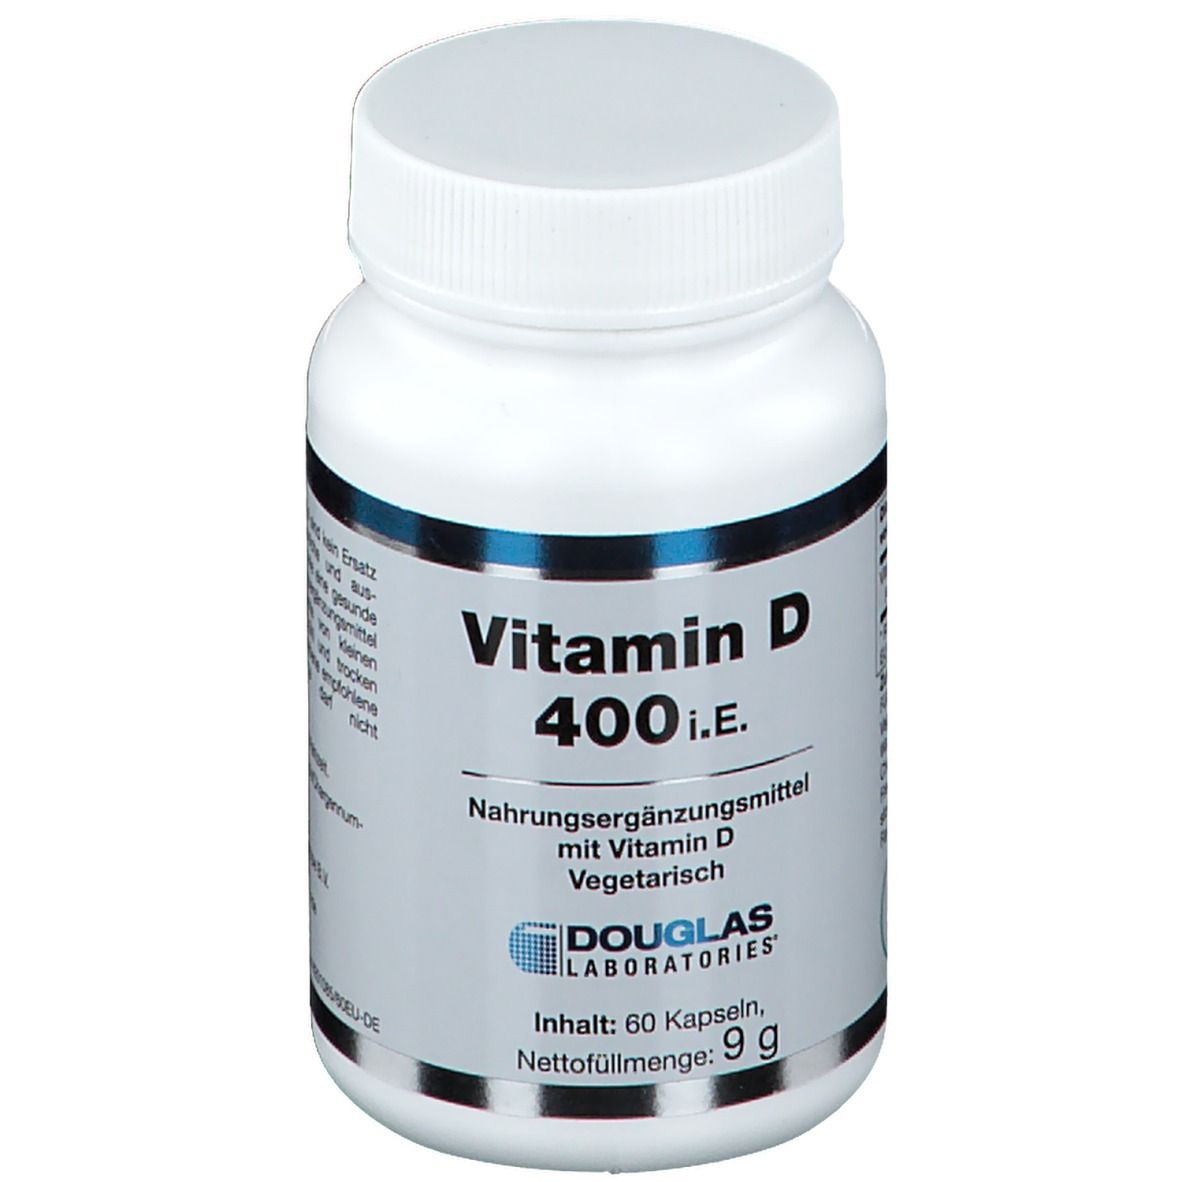 Vitamin D 400 I.e.